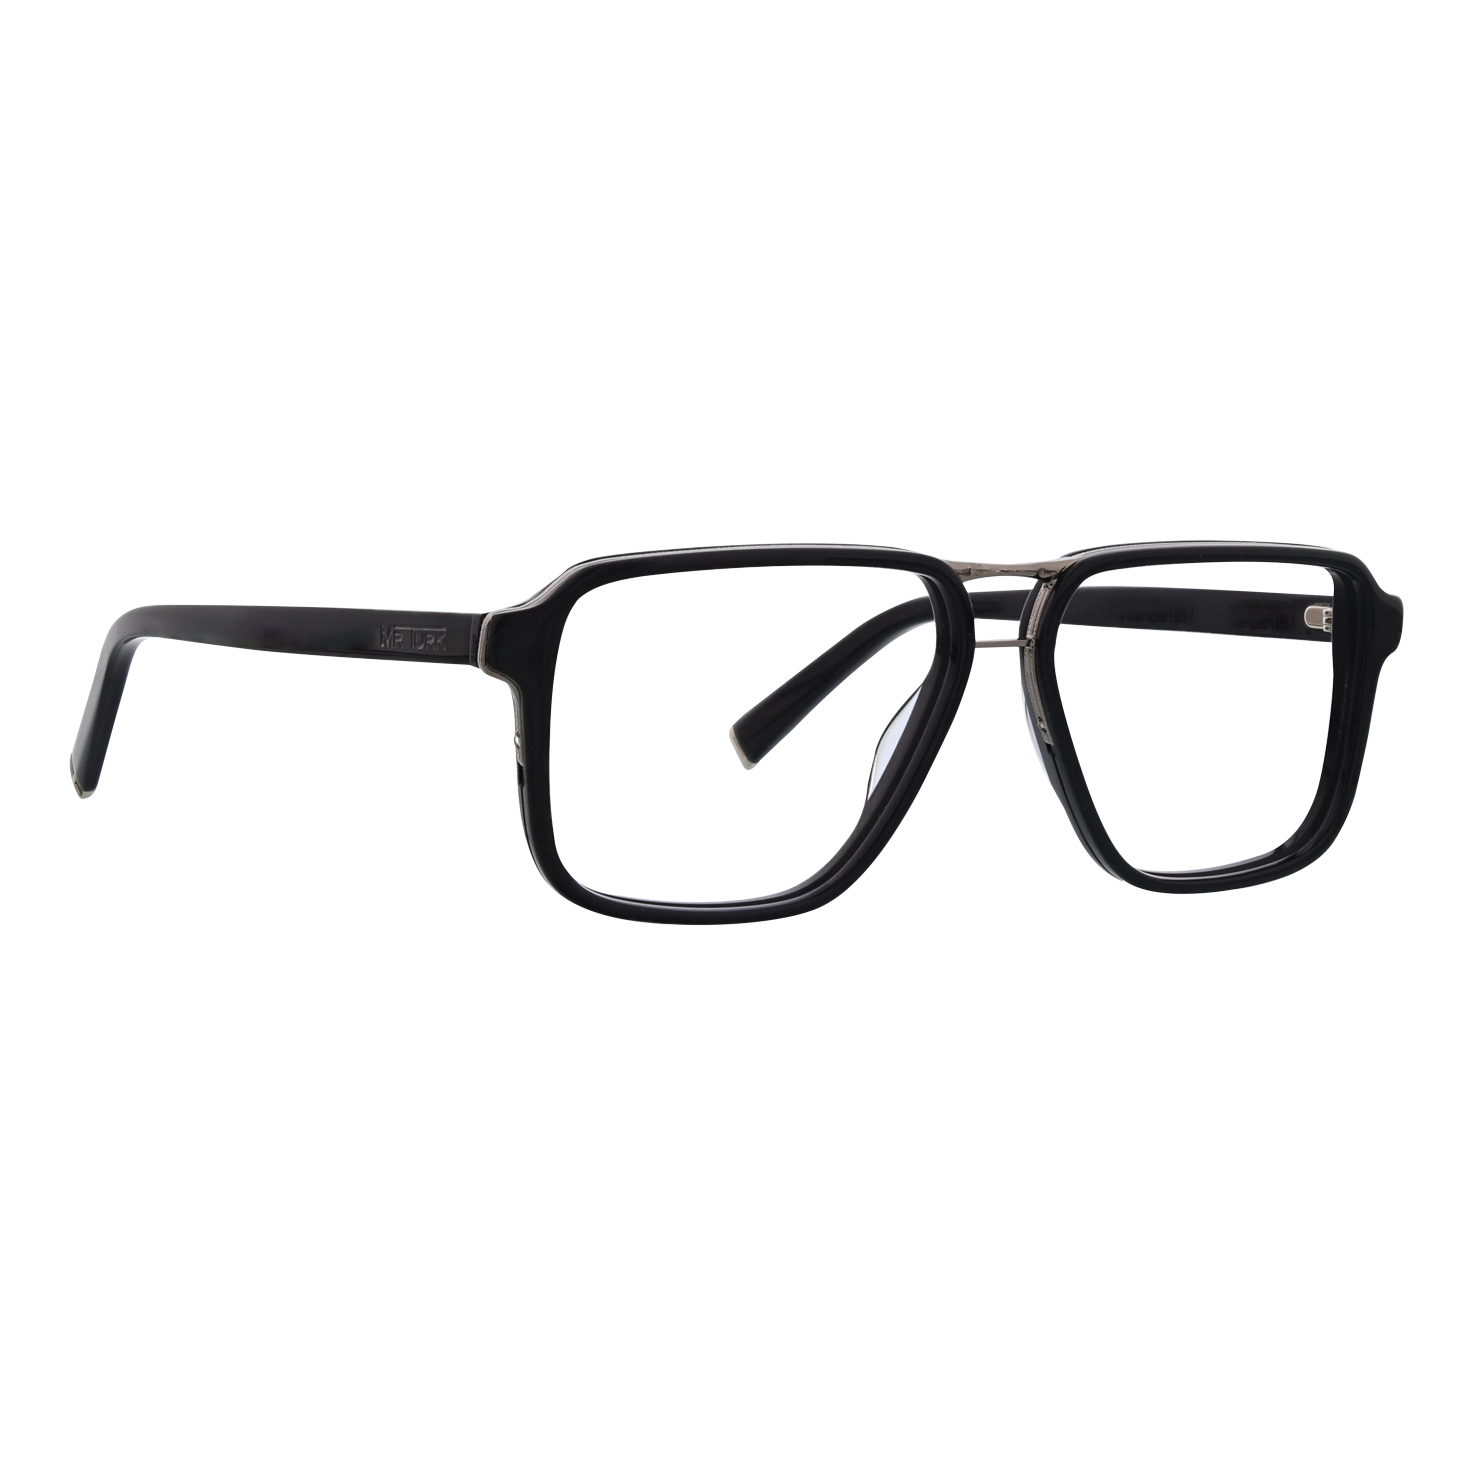 Mr. Turk Optical Eyeglasses | Mr. Turk Optical Eyeglasses Scarpa